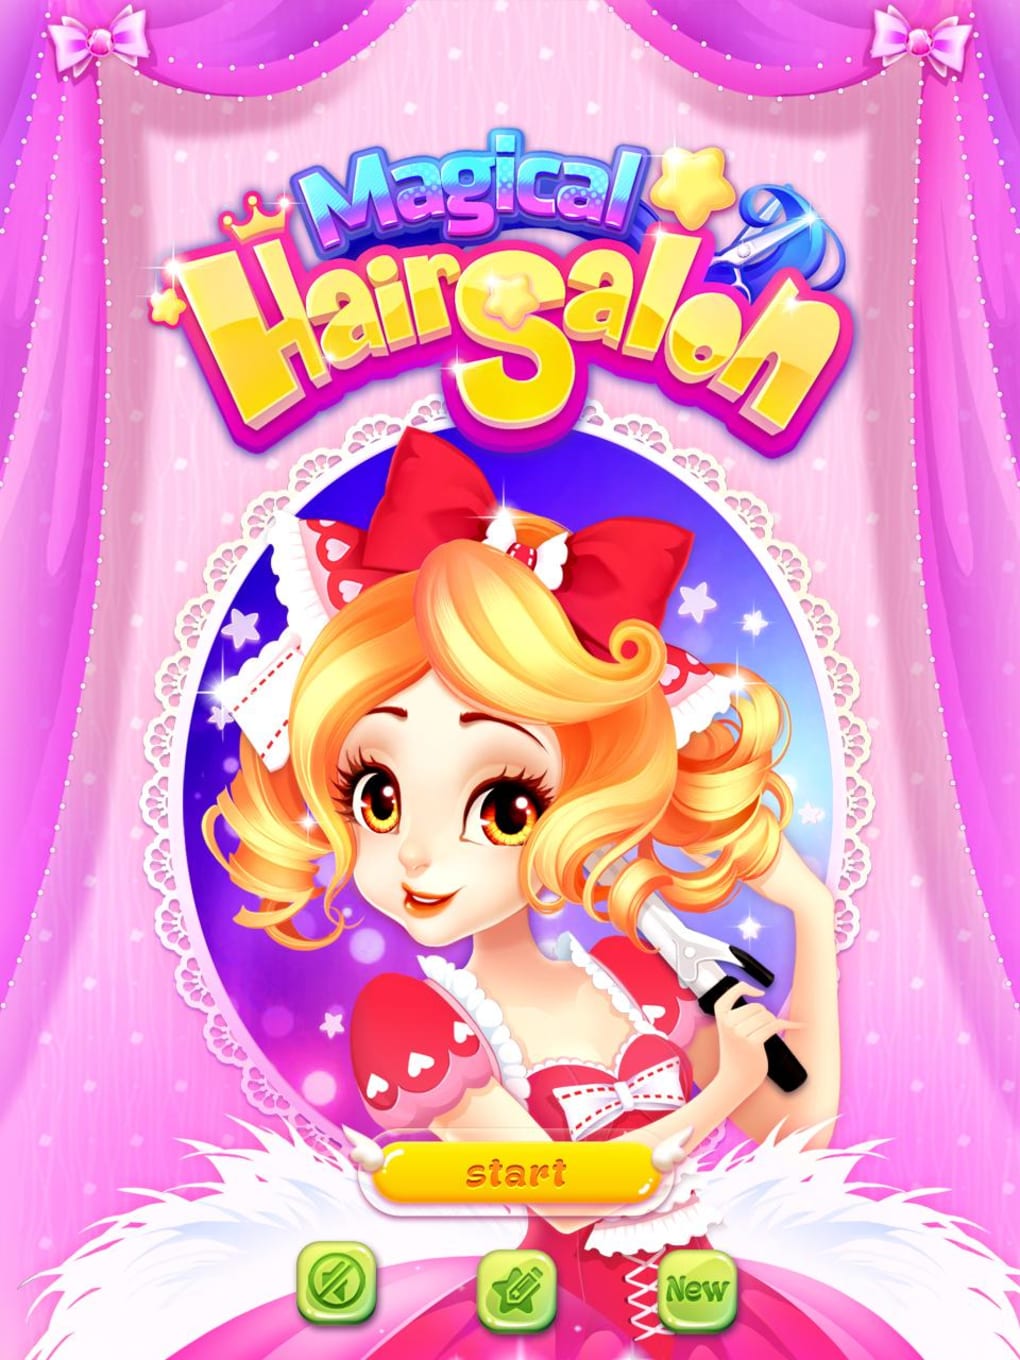 Download do APK de Happy Jogos de Salão de Beleza para Android